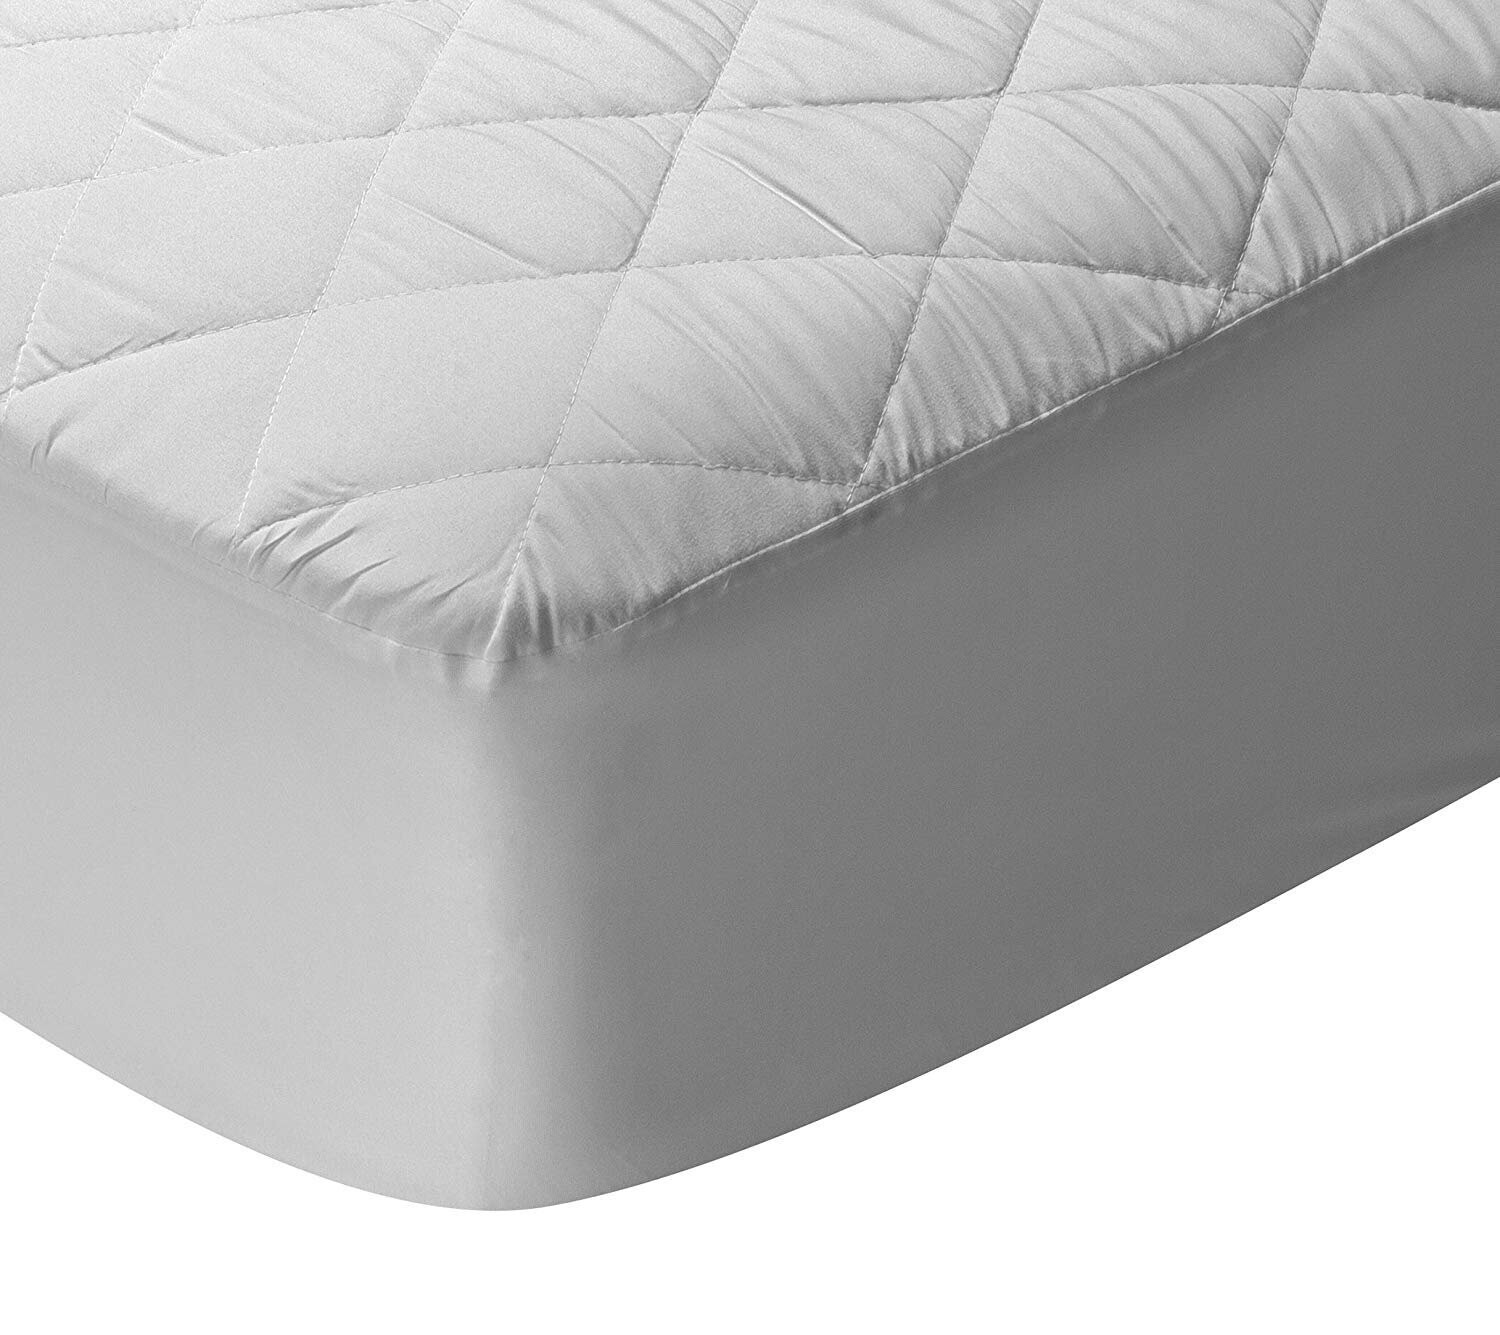 Protector de colchón acolchado reversible transpirable.